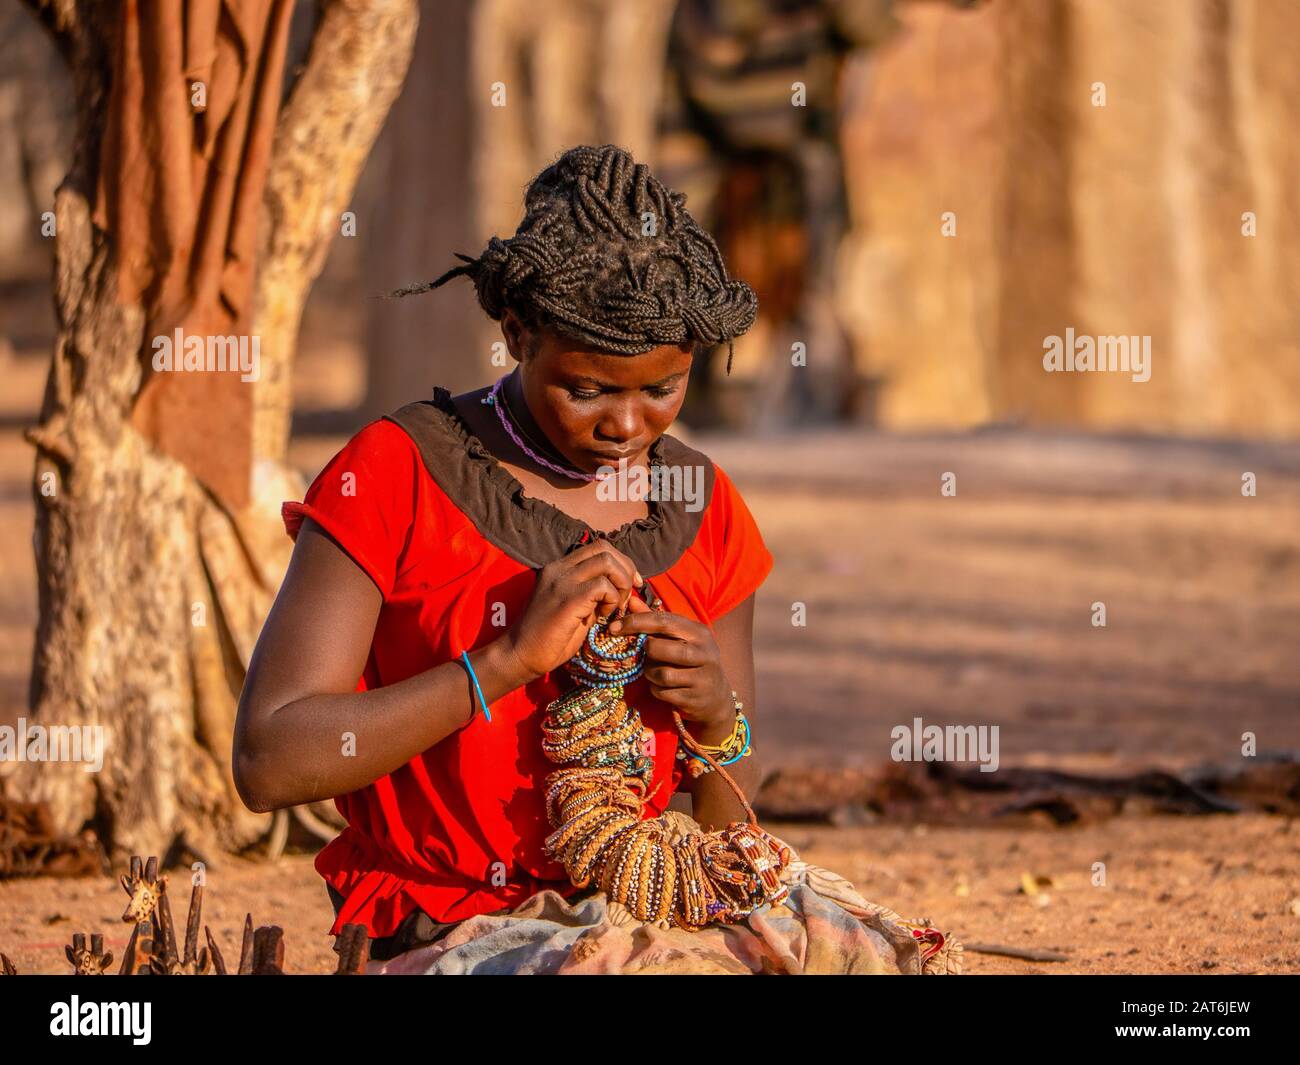 Ländliches Namibia - 21. August 2016. Eine junge Frau in einem Himba-Stammesdorf, die sich darauf vorbereitet, Handwerk an Touristen zu verkaufen, was eine wichtige Einnahmequelle ist. Stockfoto